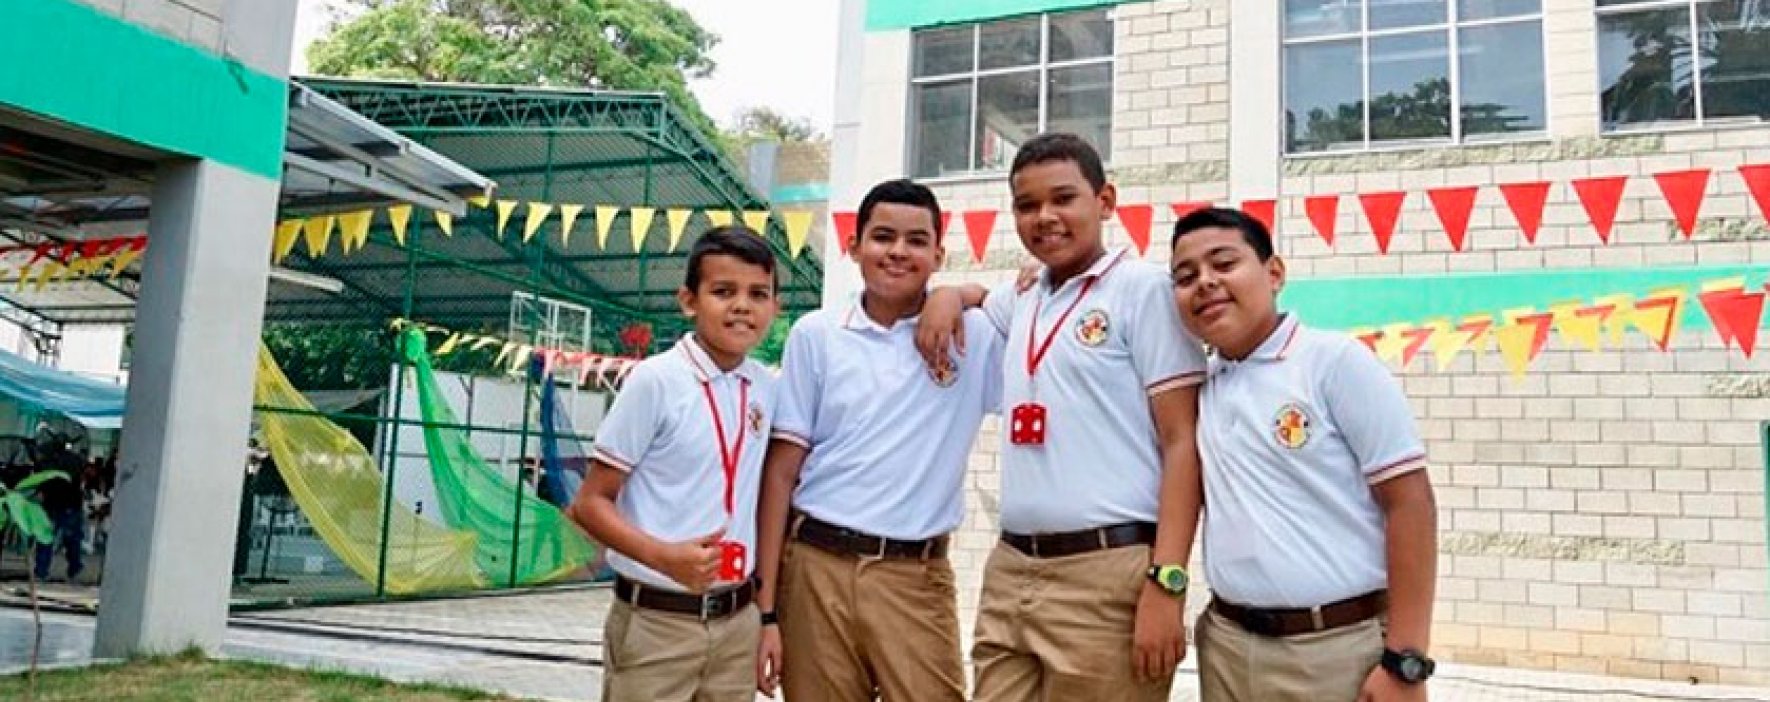 Estudiantes barranquilleros se beneficiarán con la Institución Educativa Gabriel García Márquez